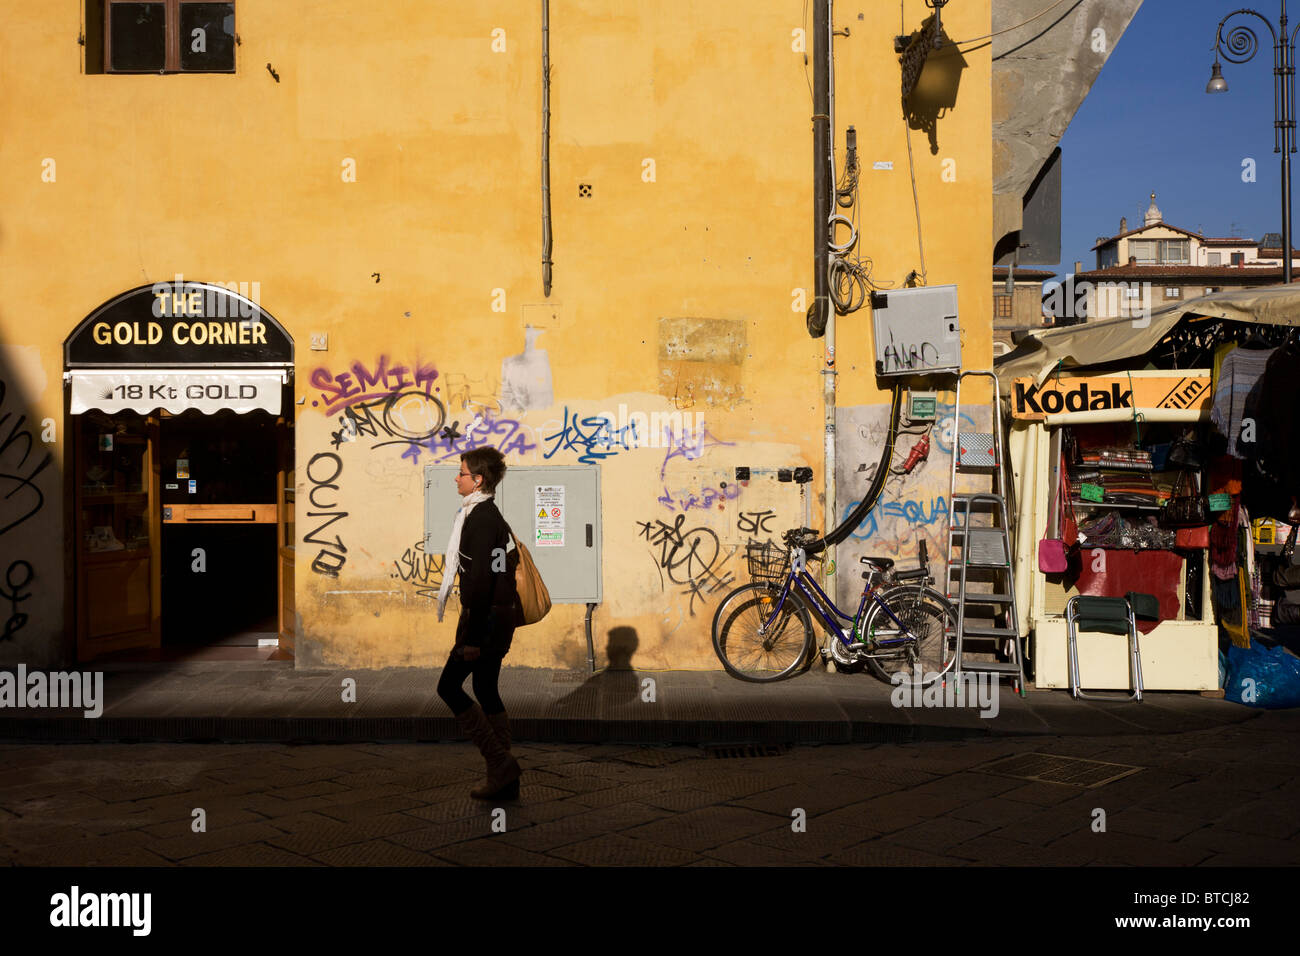 Lokalen vorbei an Graffiti Straßenecke und touristischen Kiosk in der Nähe von Piazza Santa Croce in Florenz. Stockfoto